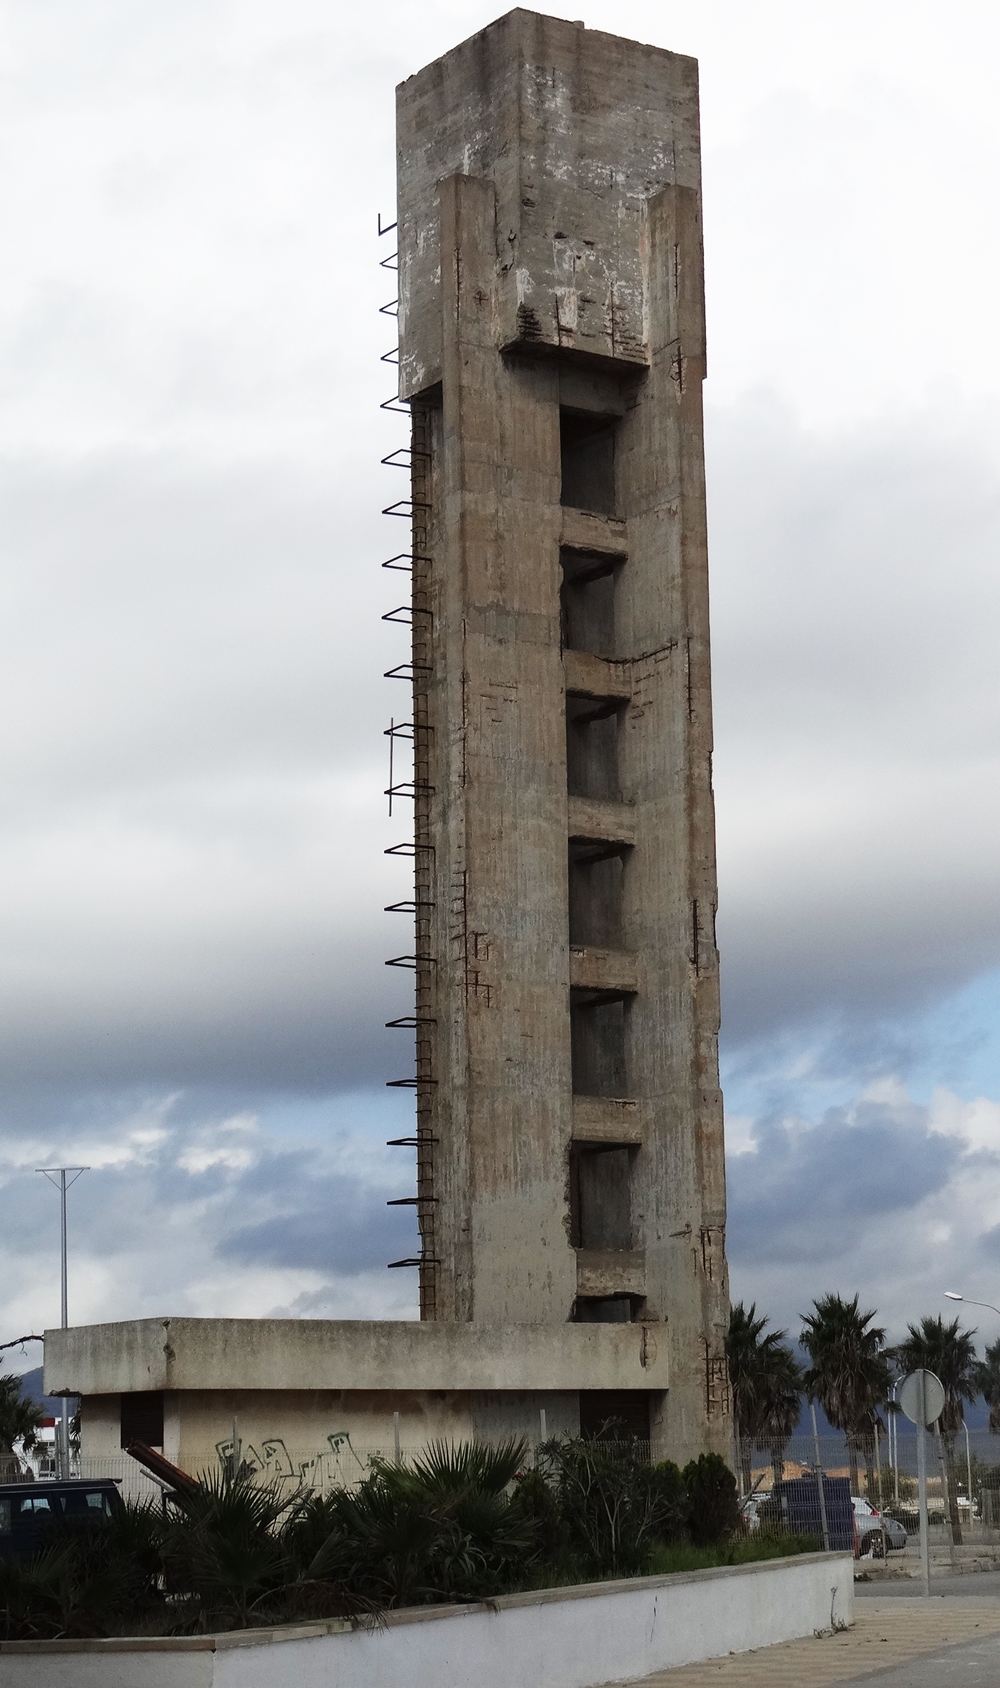 Depósito de agua de la Barriada Virgen del Carmen que contenía un vértice geodésico destruido con la demolición por parte del Ayuntamiento de Tarifa de la singular edificación.